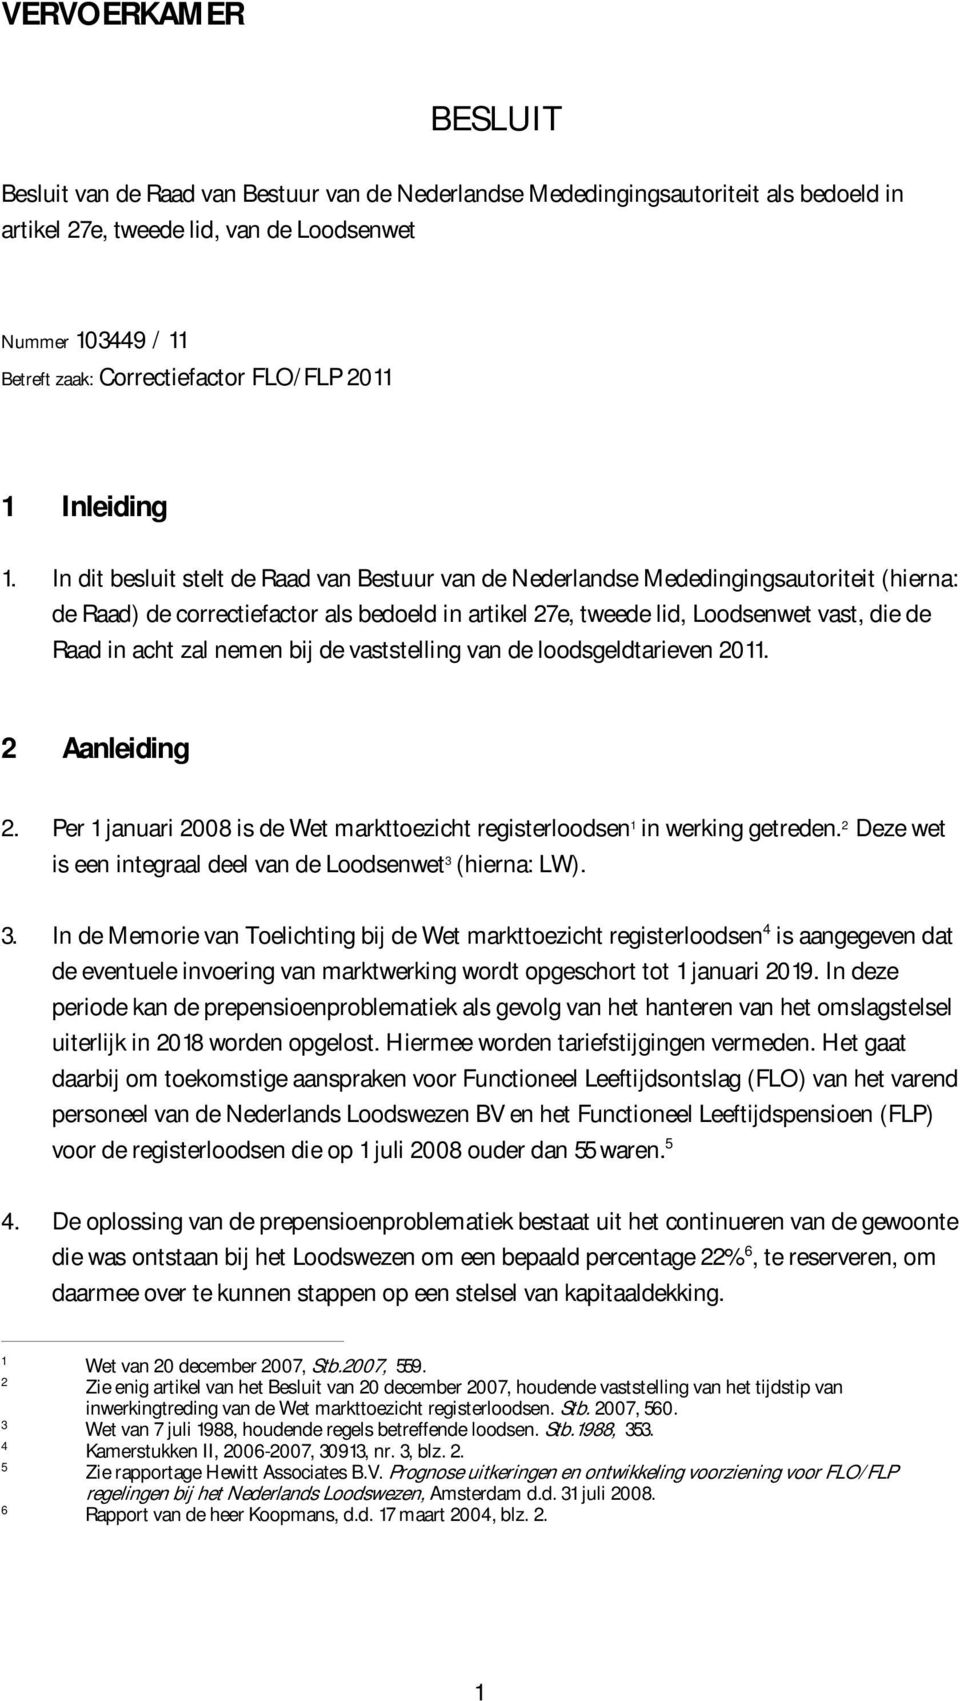 In dit besluit stelt de Raad van Bestuur van de Nederlandse Mededingingsautoriteit (hierna: de Raad) de correctiefactor als bedoeld in artikel 27e, tweede lid, Loodsenwet vast, die de Raad in acht